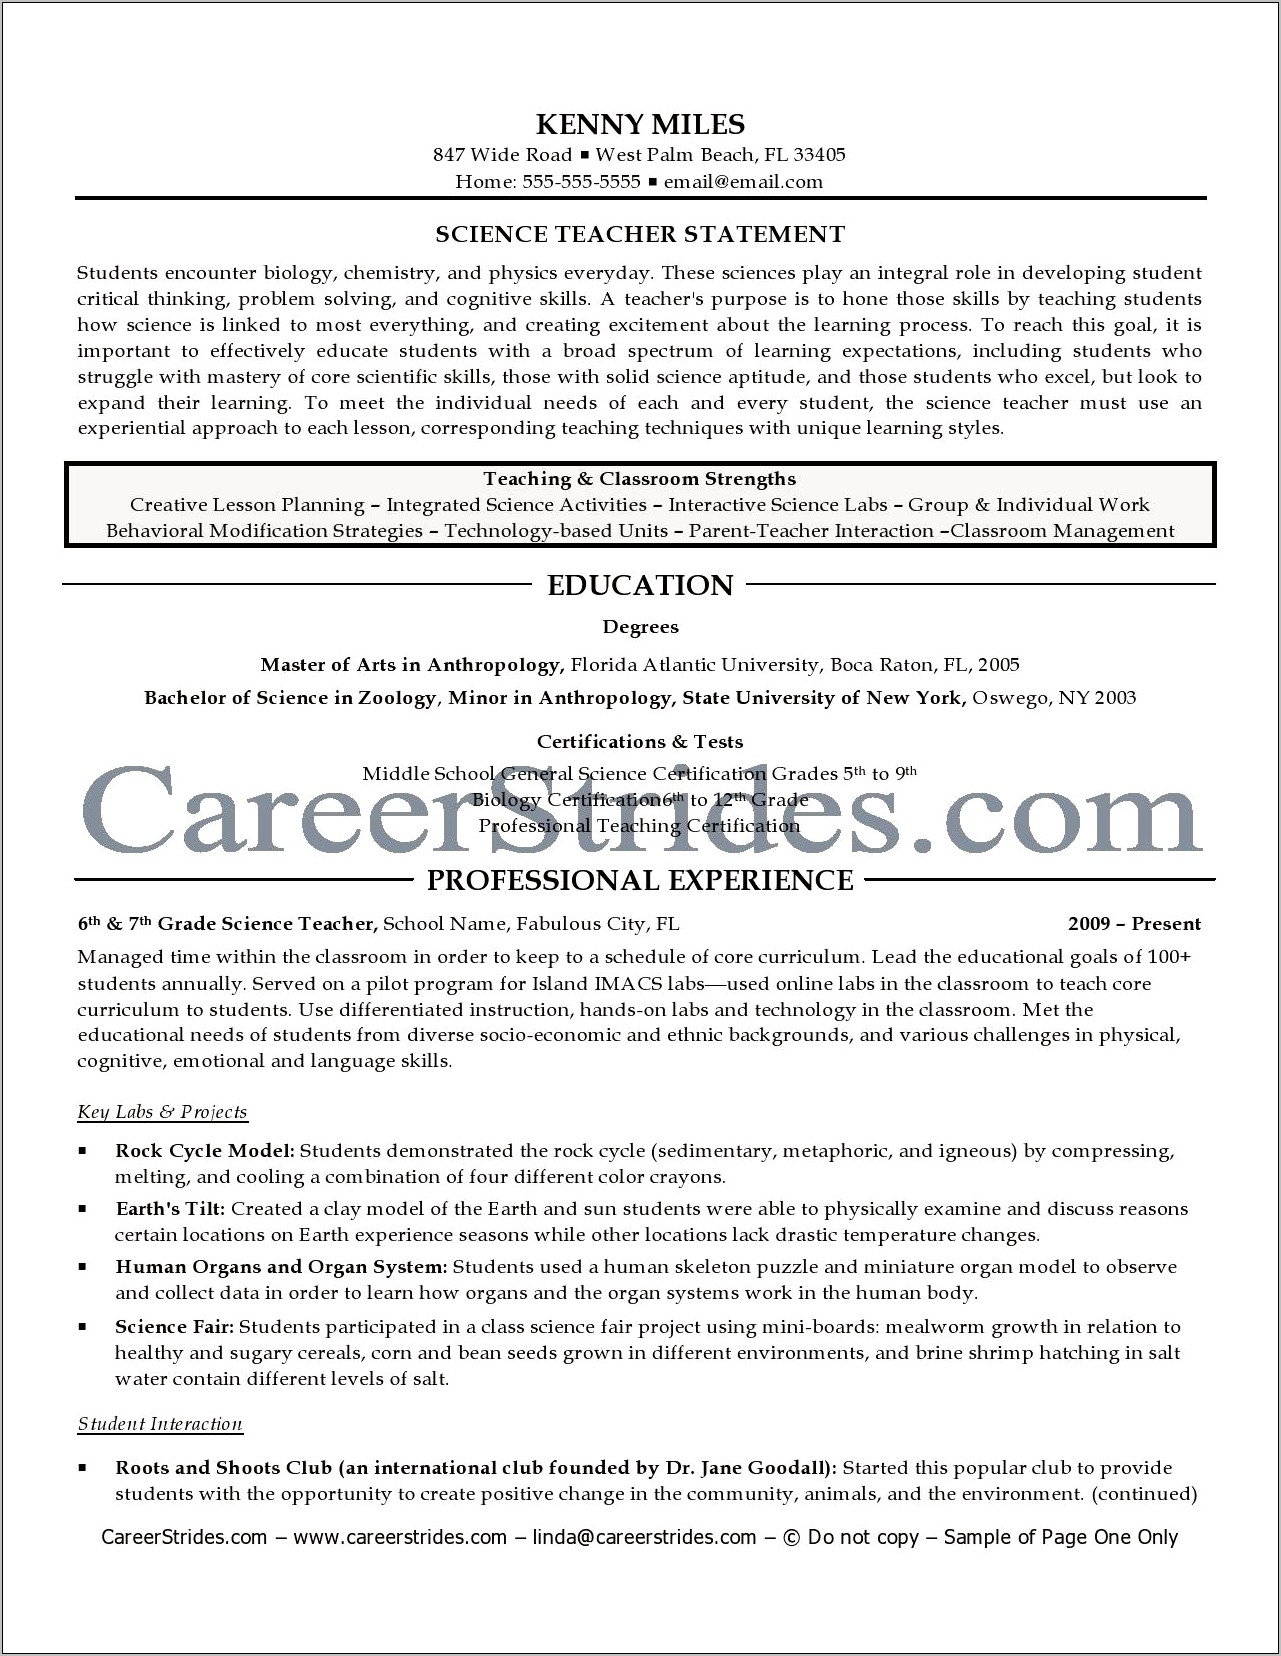 Sample Resume Career Change Teacher